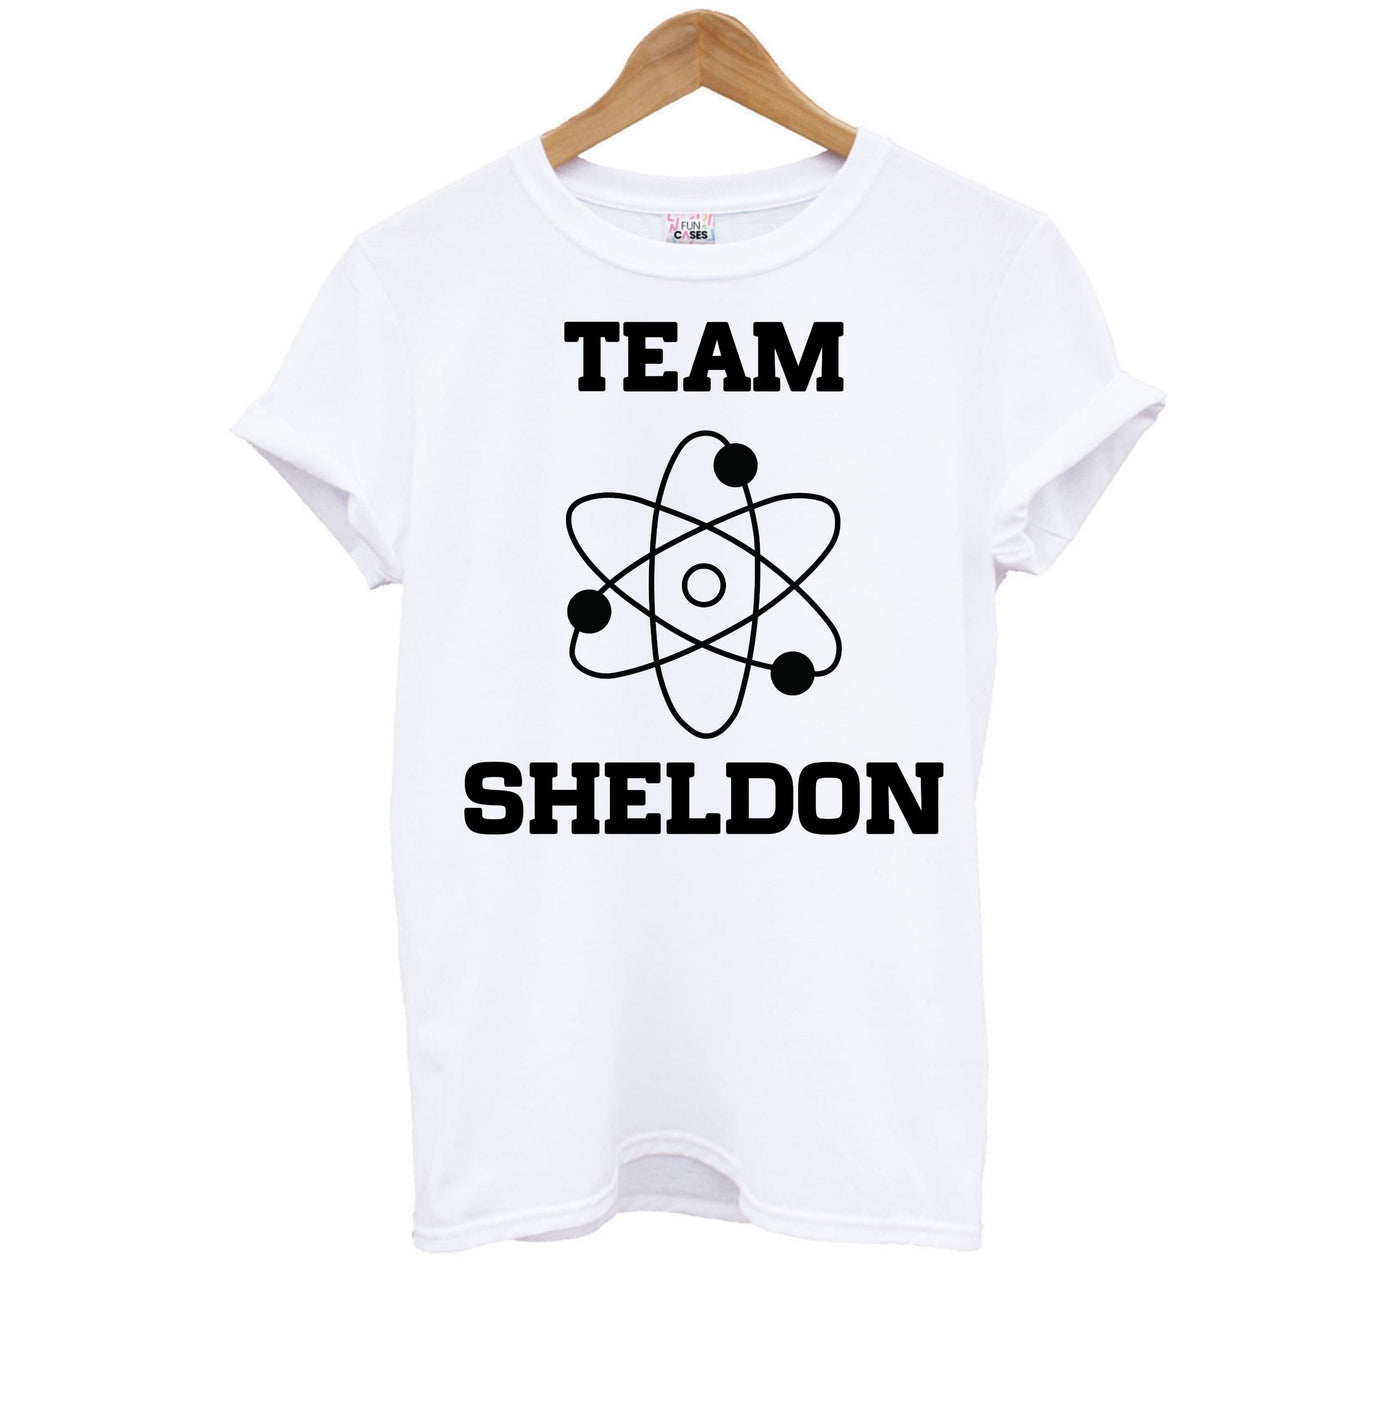 Team Sheldon - Young Sheldon Kids T-Shirt